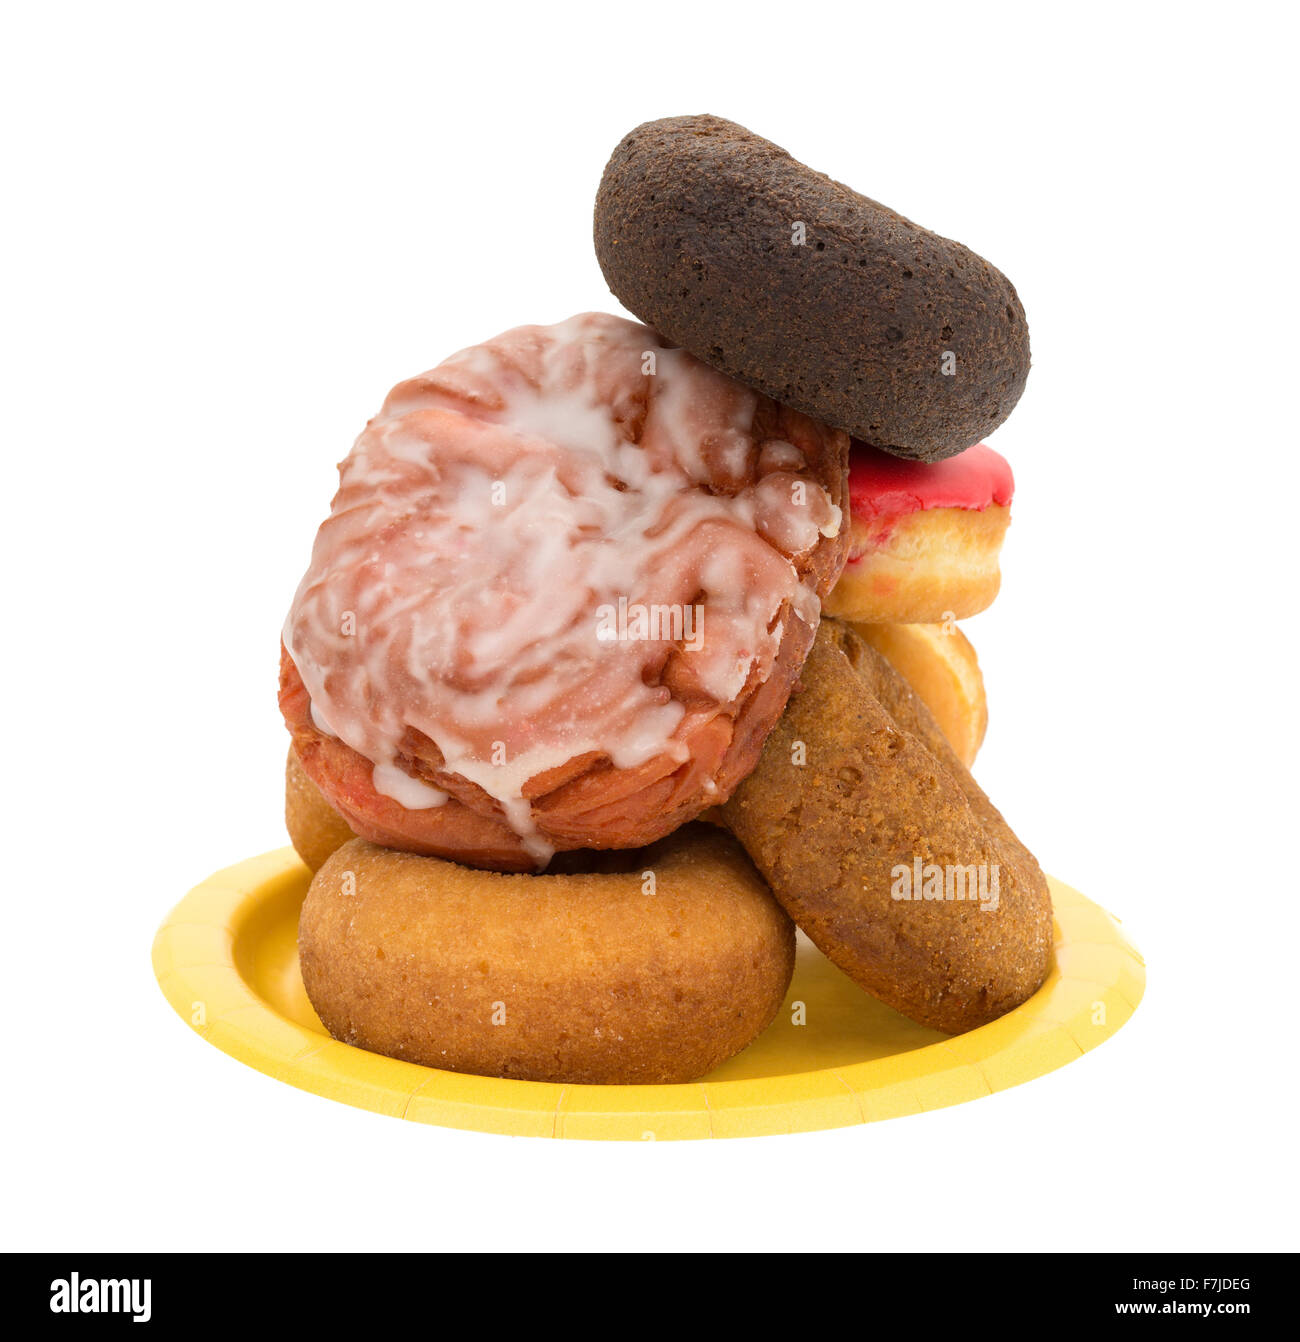 Une plaque de papier jaune avec une pile d'un assortiment de donuts et beignets de cerises glacées sur un fond blanc. Banque D'Images